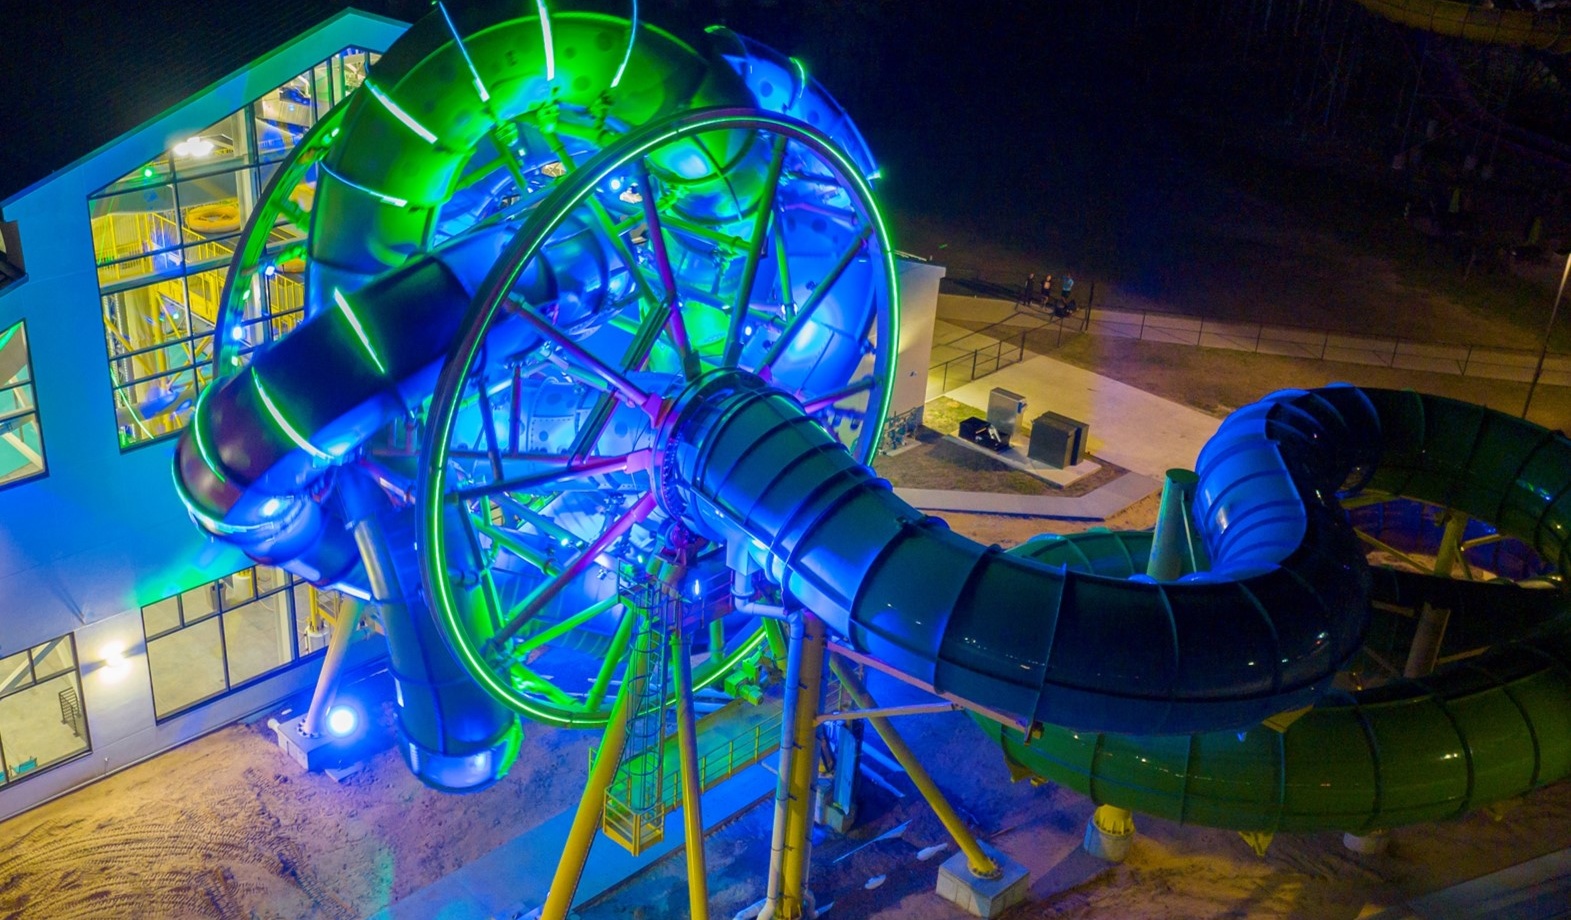 Slidewheel at night in water park